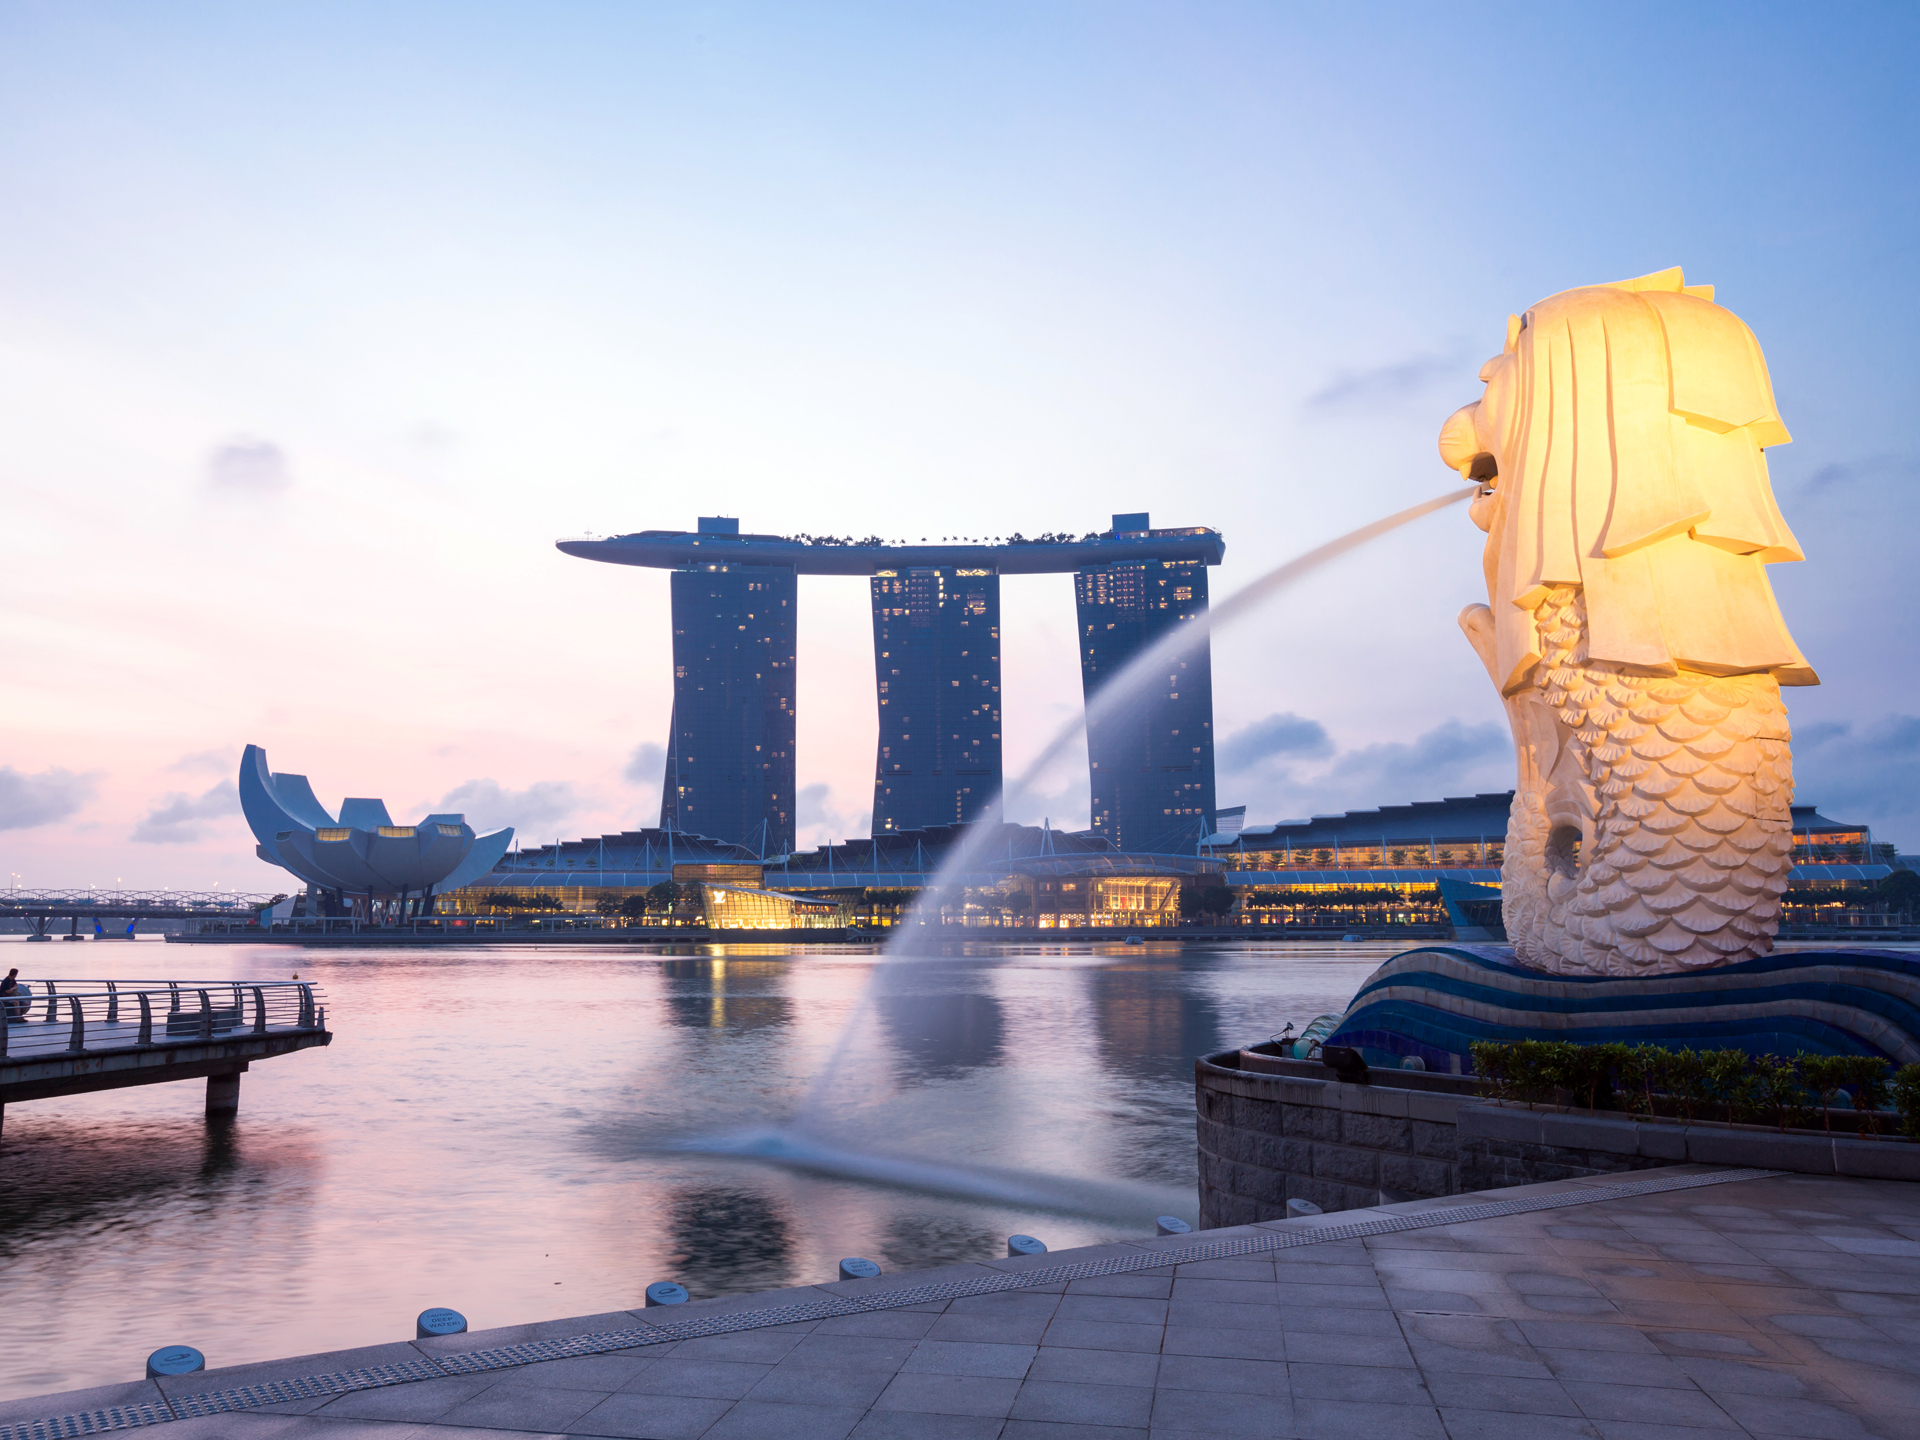 新加坡7日游,新加坡7日游费用-中青旅遨游网